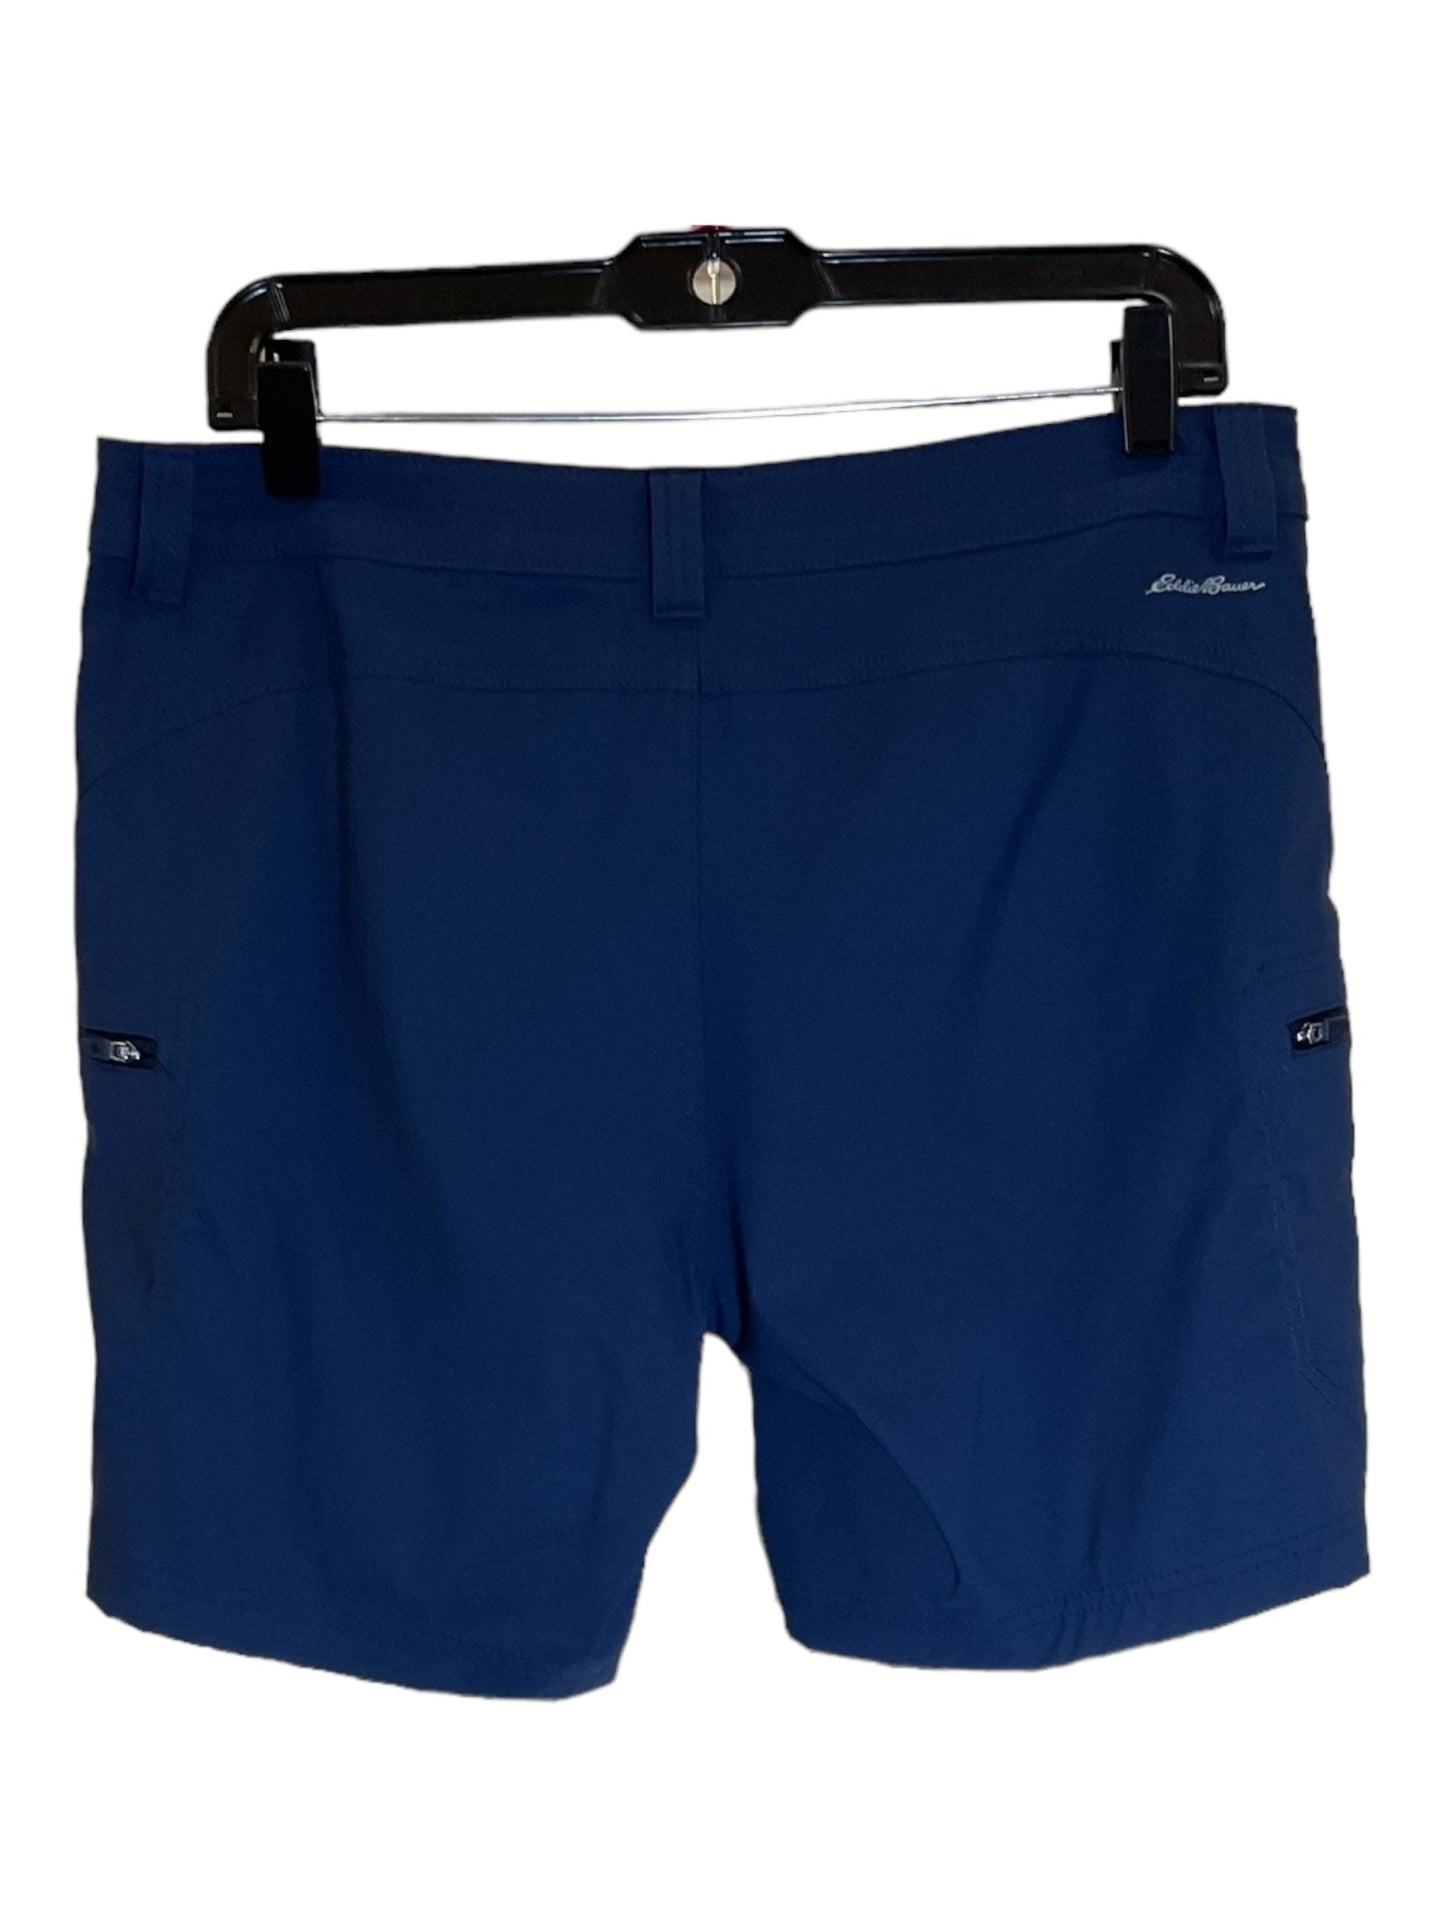 Blue Shorts Eddie Bauer, Size 10